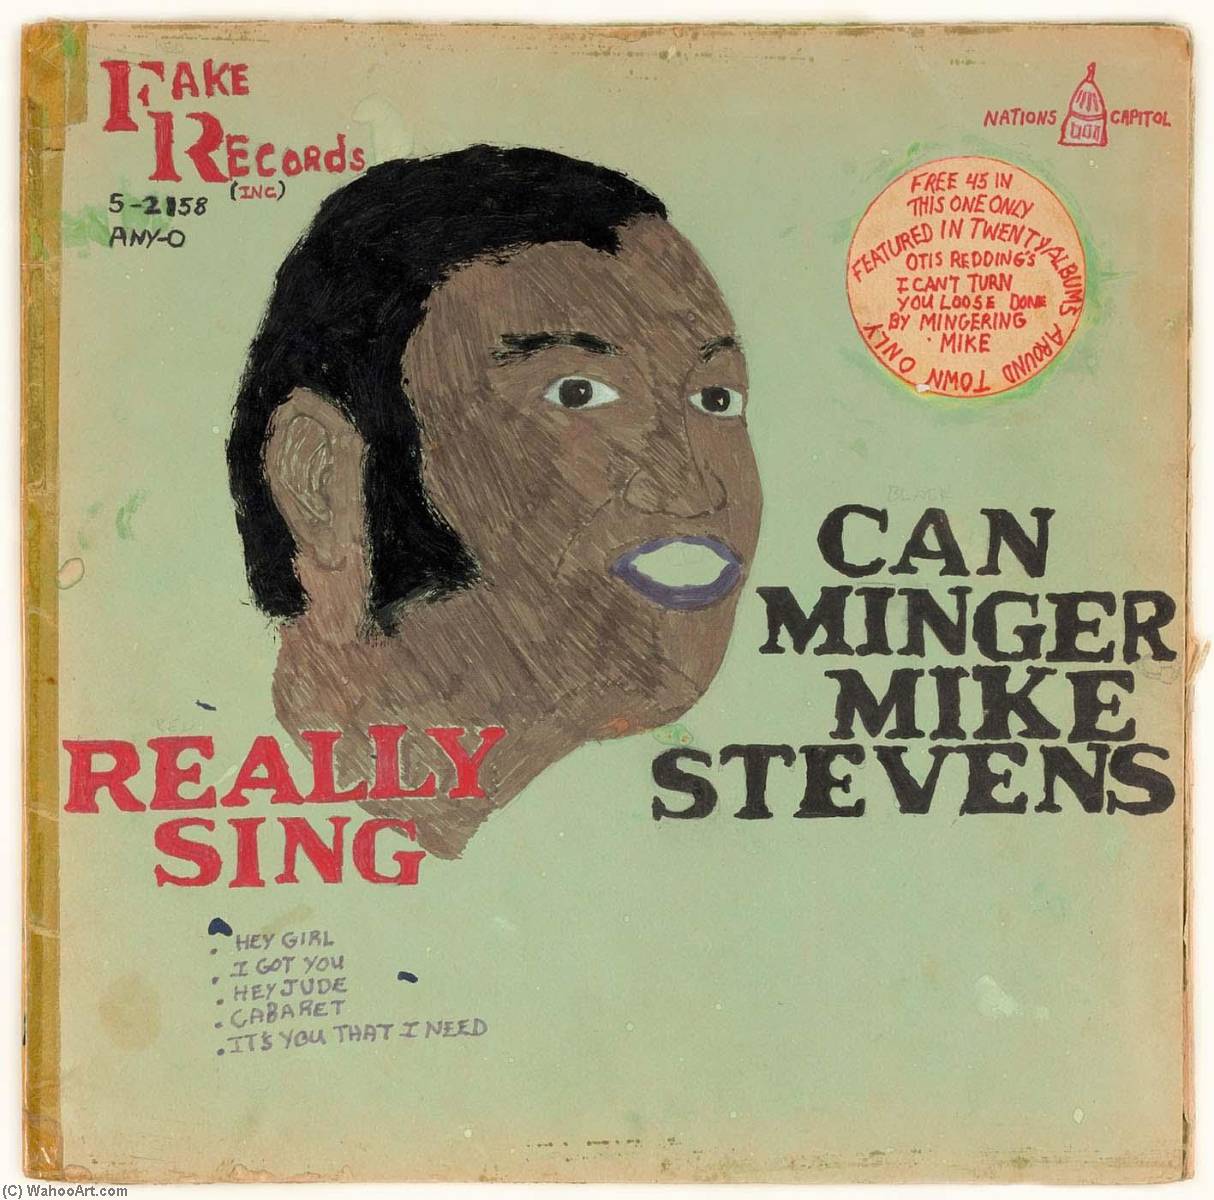 WikiOO.org - Енциклопедия за изящни изкуства - Живопис, Произведения на изкуството Mingering Mike - FAKE RECORDS (INC.) CAN MINGER MIKE STEVENS REALLY SING